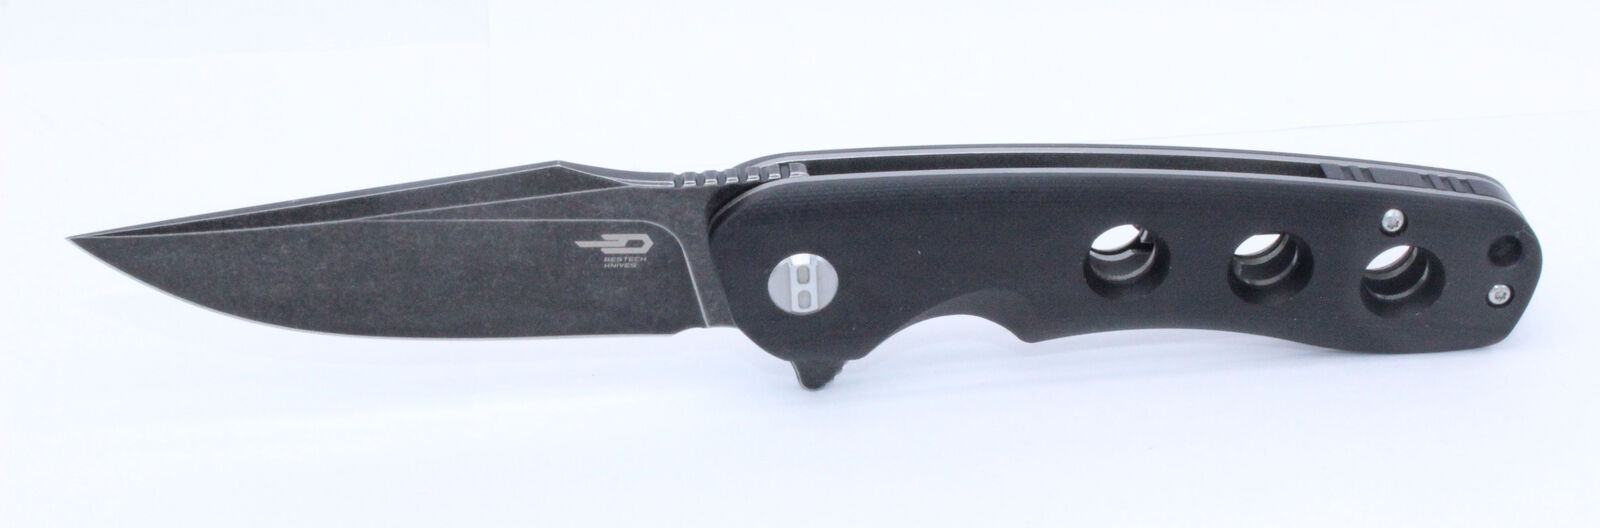 Bestech Arctic Folding Knife Black G10 Handle D2 Plain Edge BLK SW BG33A-2